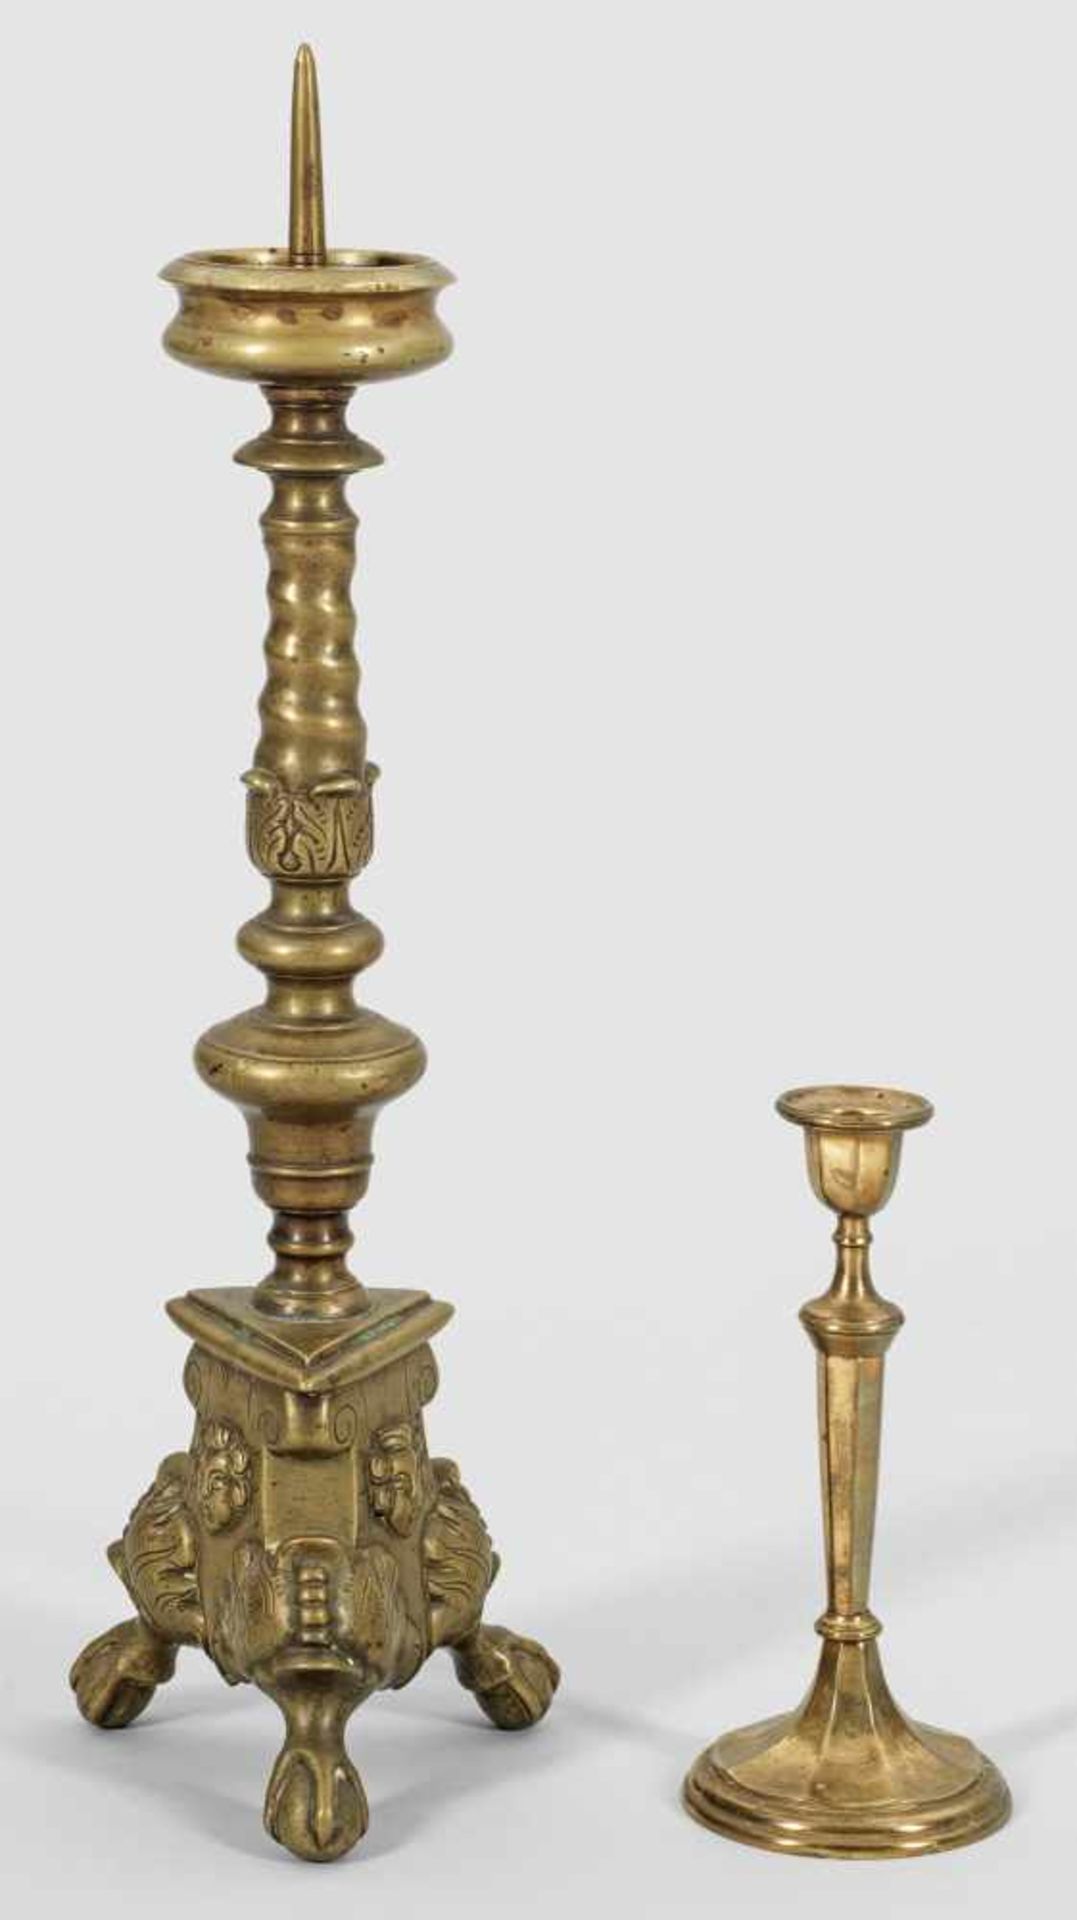 Kleiner AltarleuchterBronze. Von Klauenfüßen getragener dreiseitiger Stand mit reliefplastischen